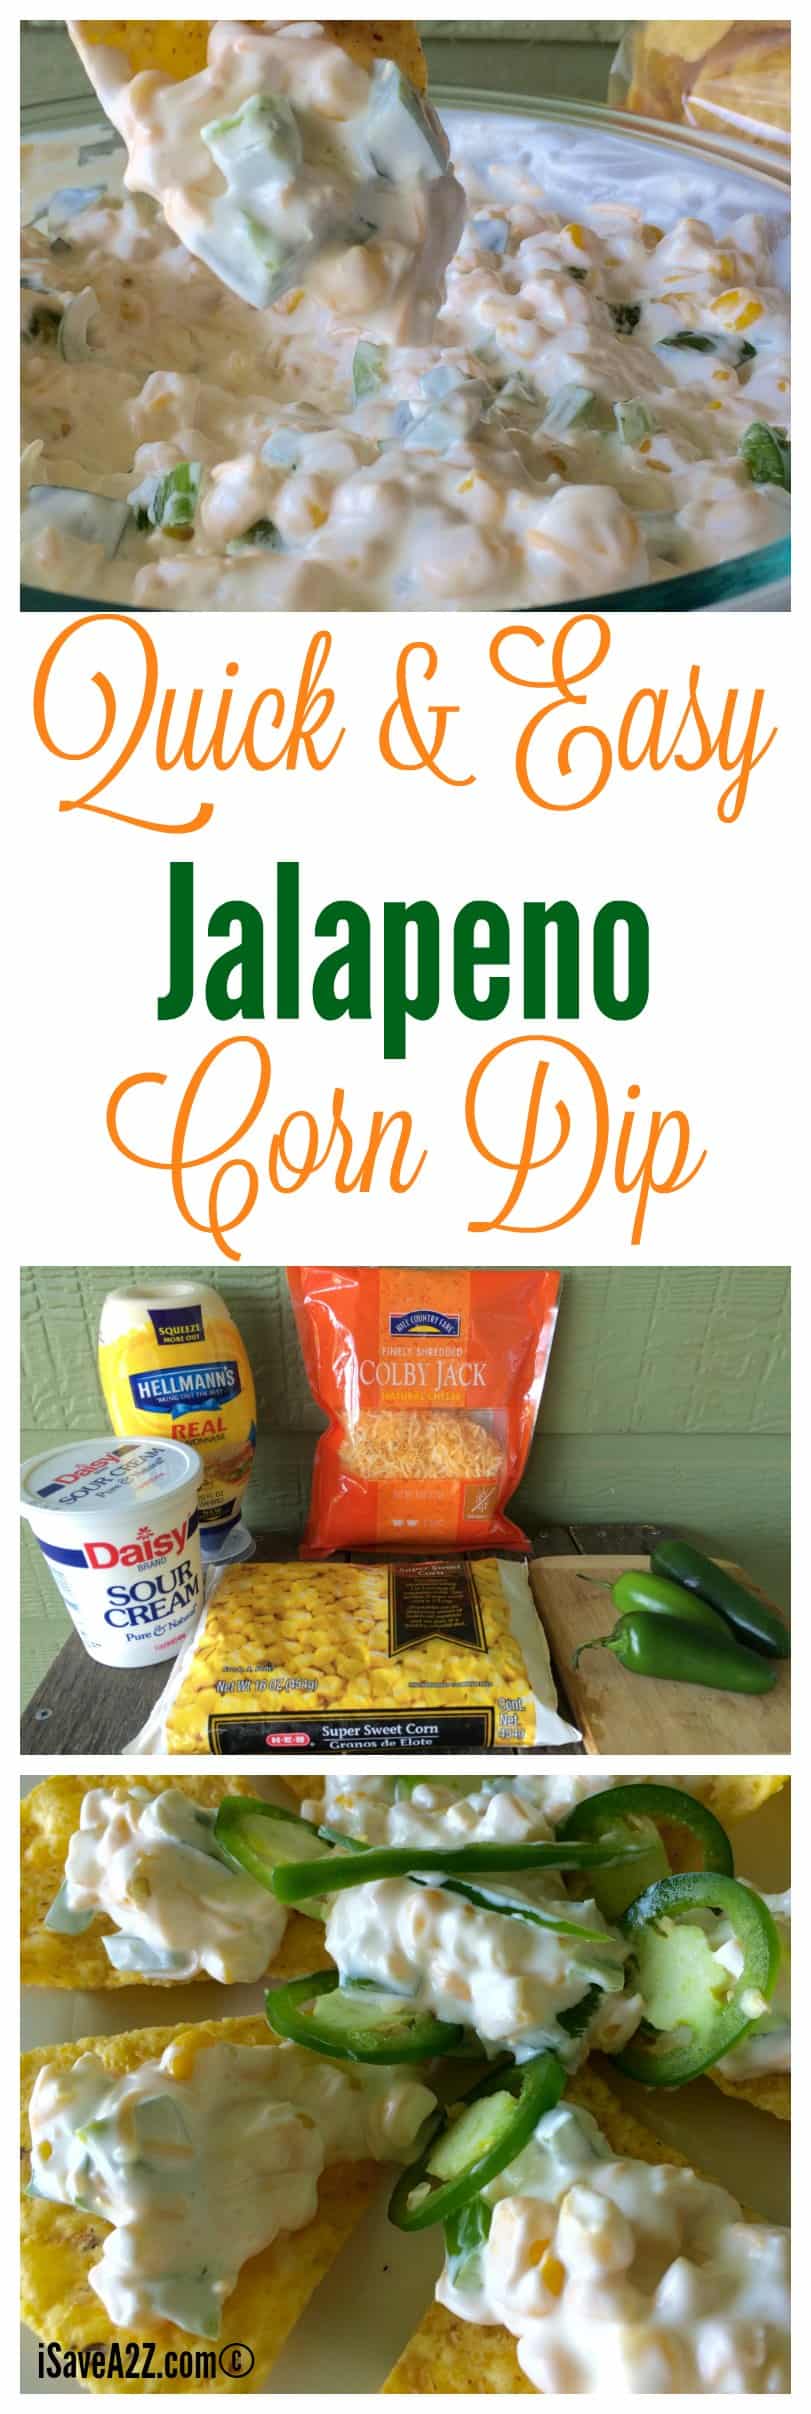 Quick Jalapeno Corn Dip Recipe